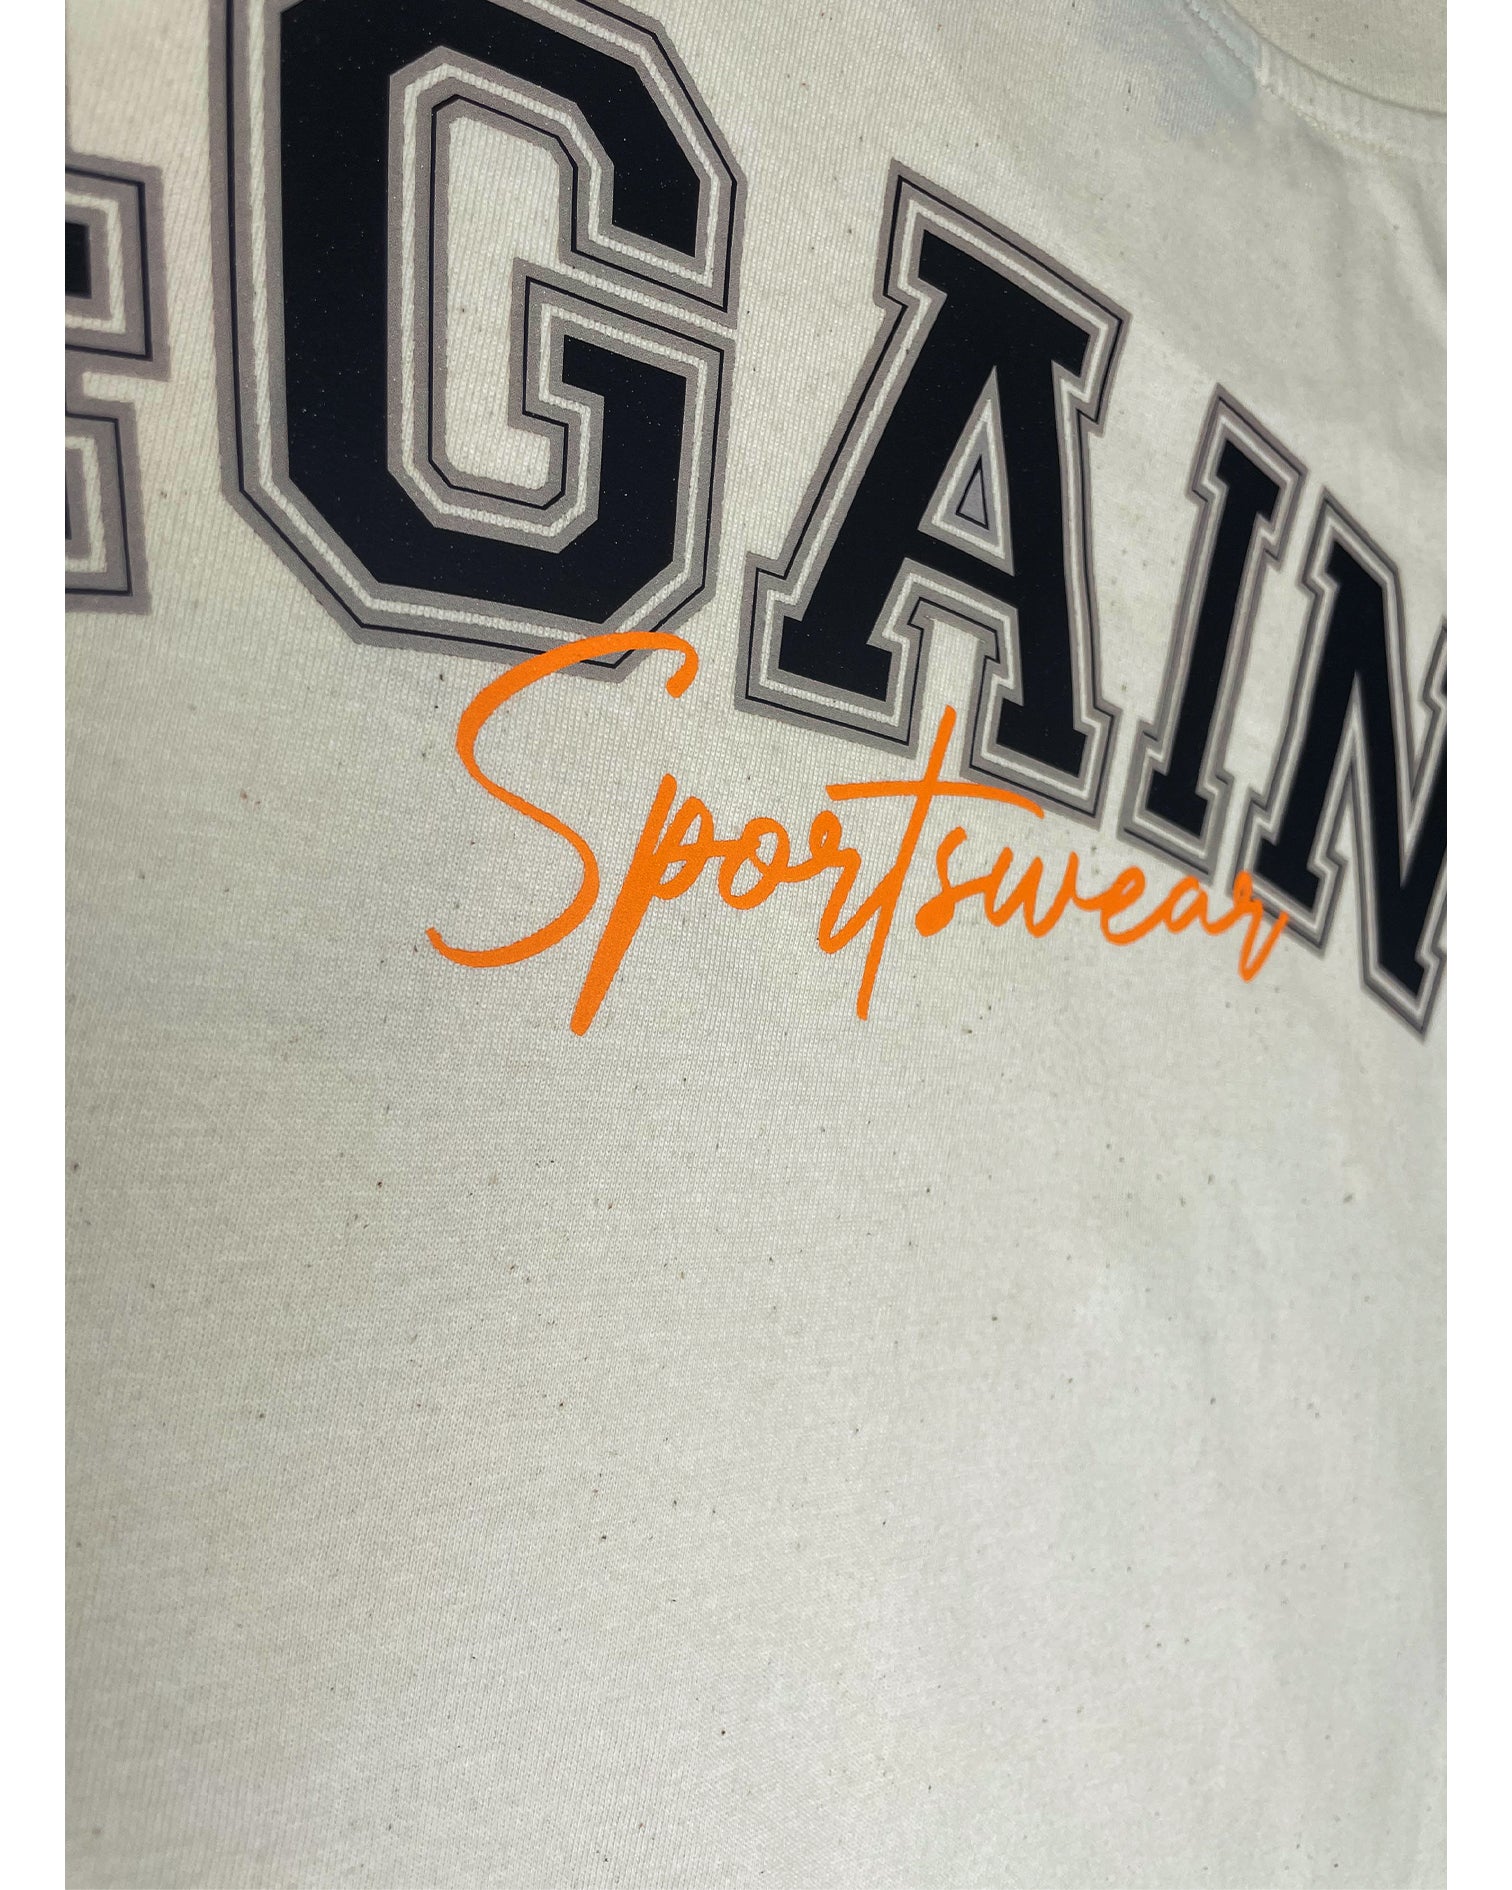 Detail Aufnahme vom orangenen "Sportswear" Schriftzug auf der Rückseite des T-Shirts